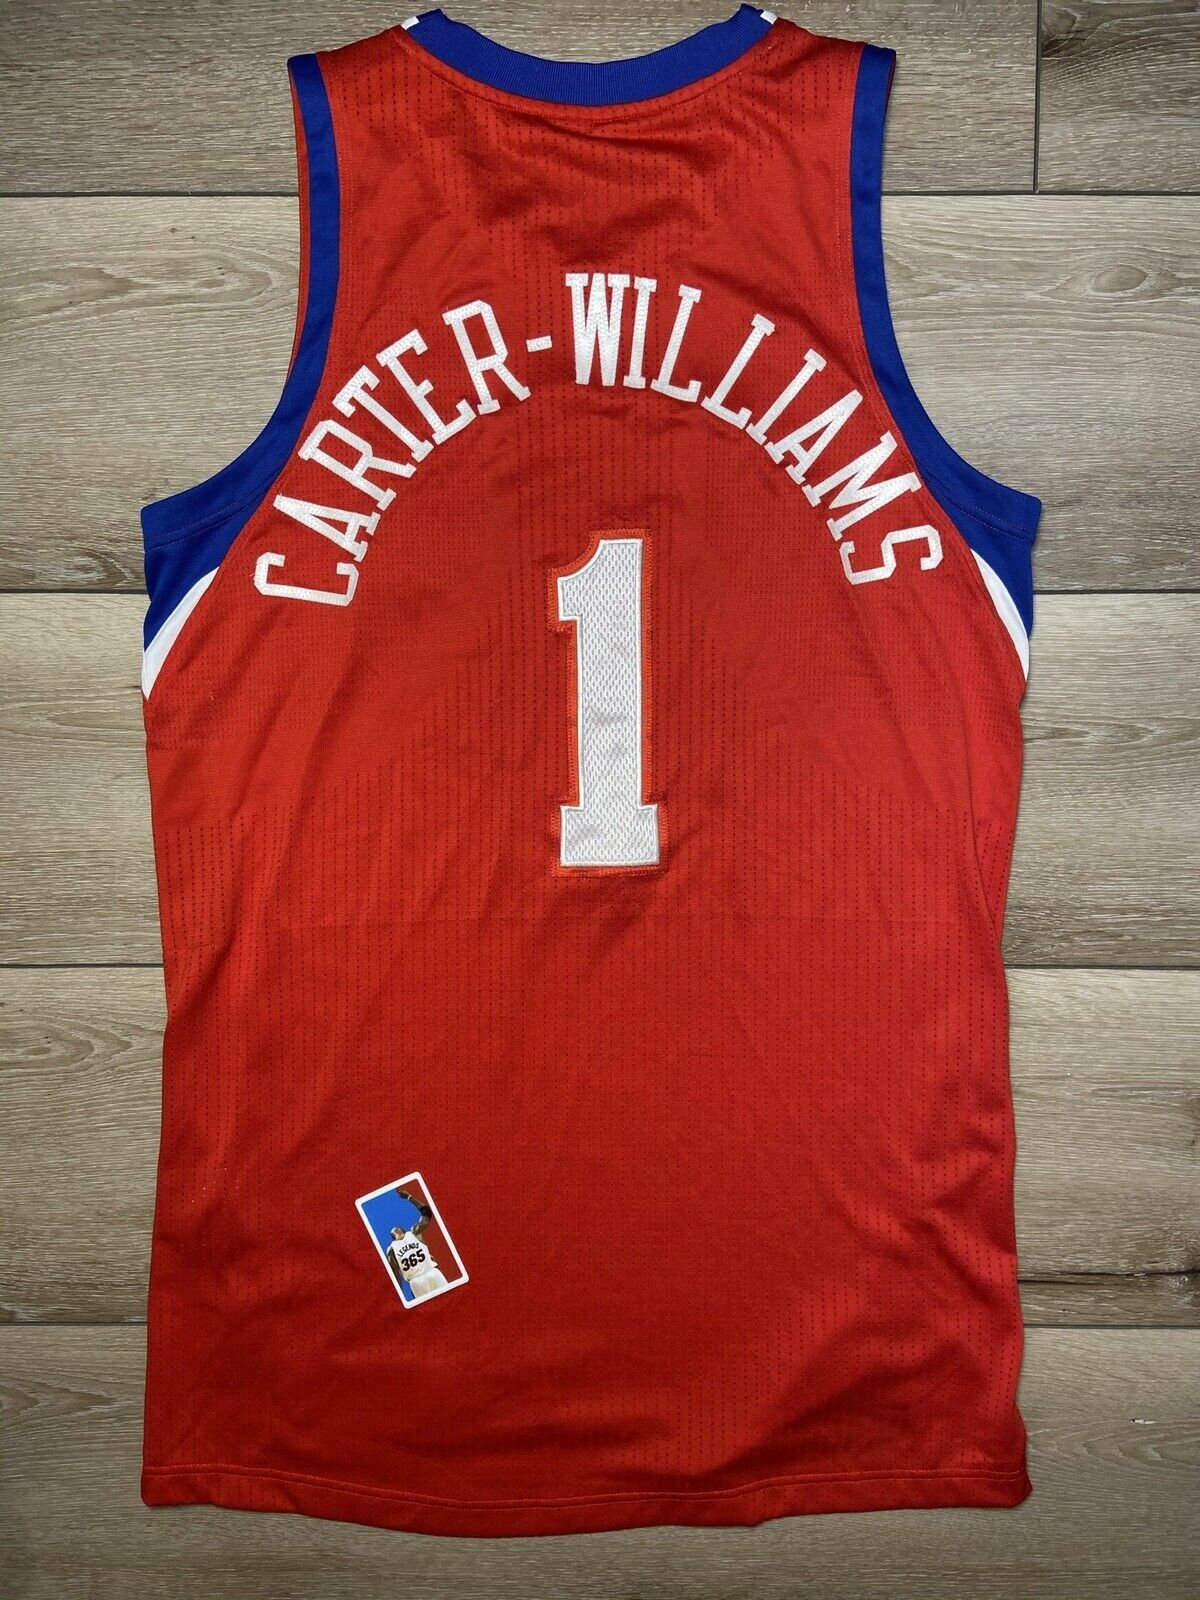 Adidas New Jersey Nets *Williams* NBA Shirt L L